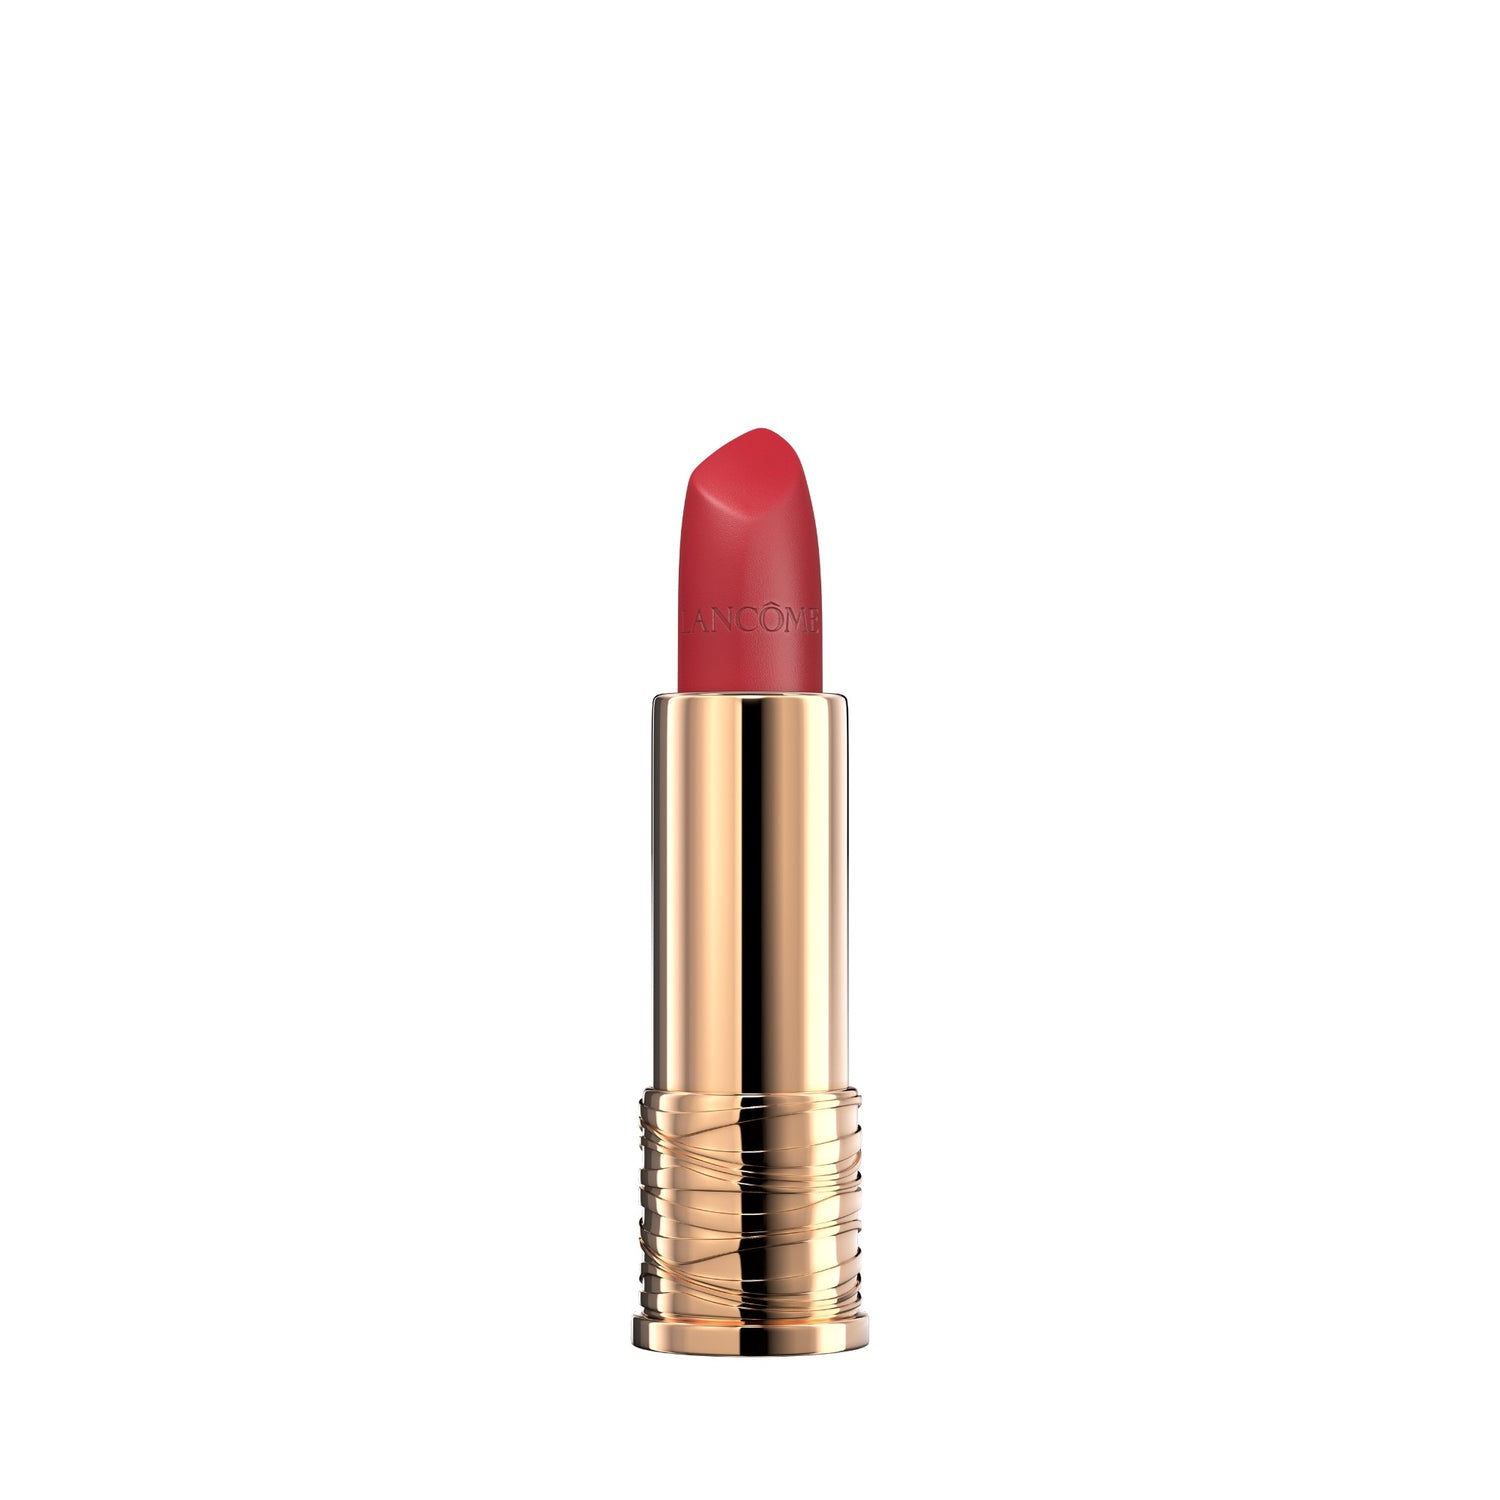 Lancome Absolu Rouge Cream Lipstick Fureur De Vivre Open